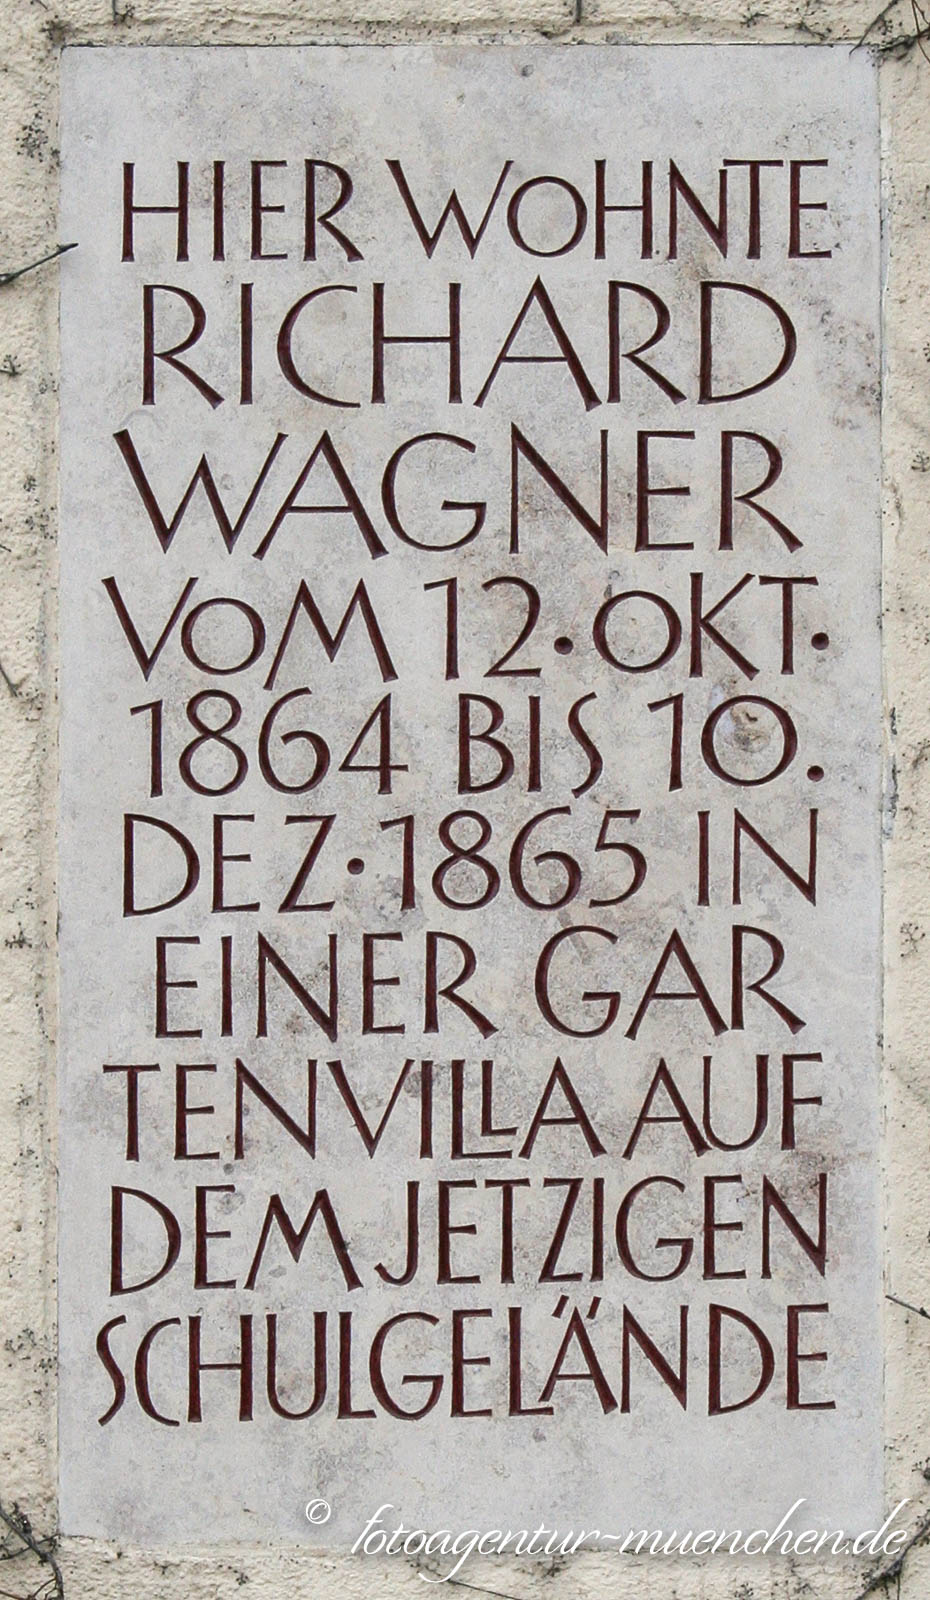 Gedenktafel für Richard Wagner